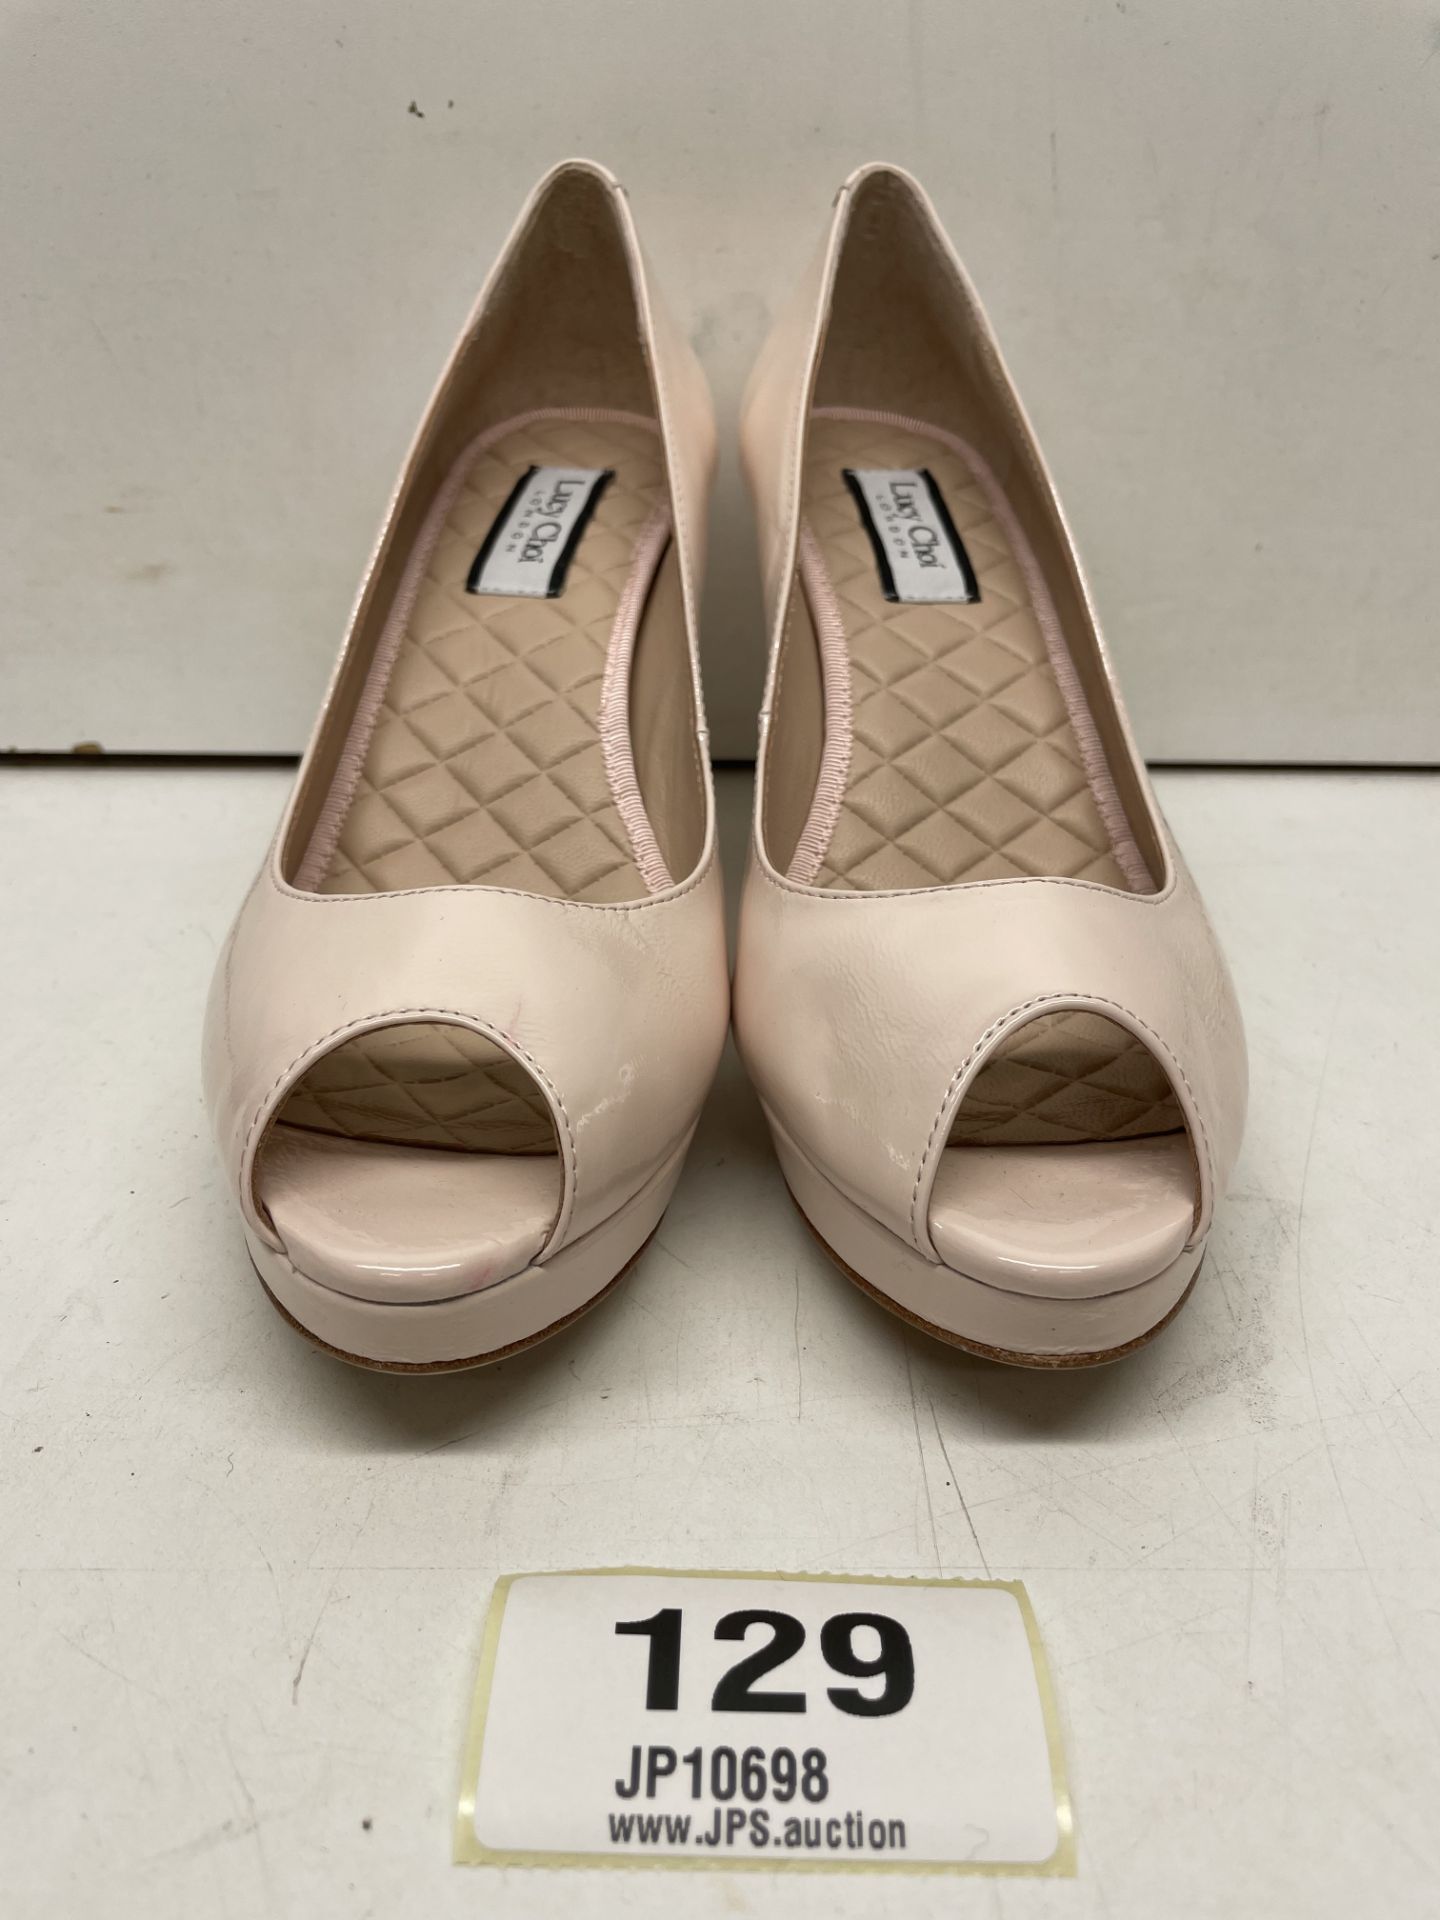 Ex-Display Lucy Choi Peep Toe Platform Heels | Eur 37 - Image 3 of 4